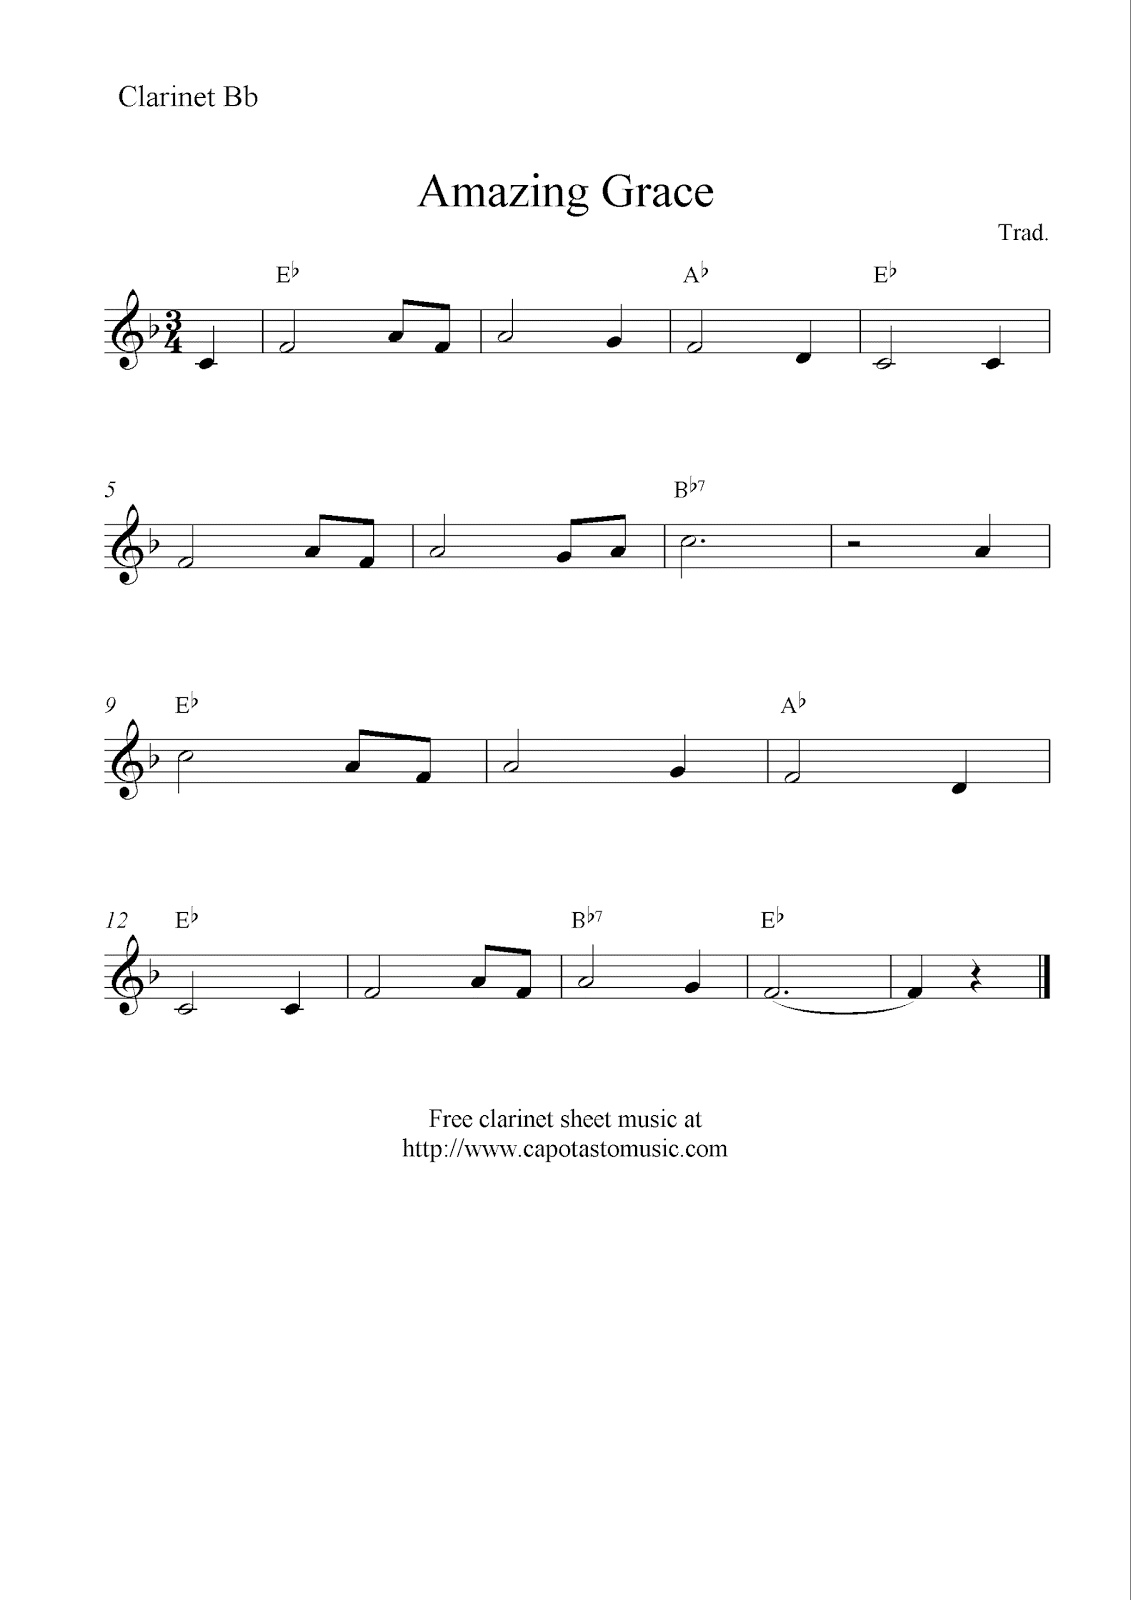 Amazing Grace, Free Clarinet Sheet Music Notes - Free Sheet Music For Clarinet Printable